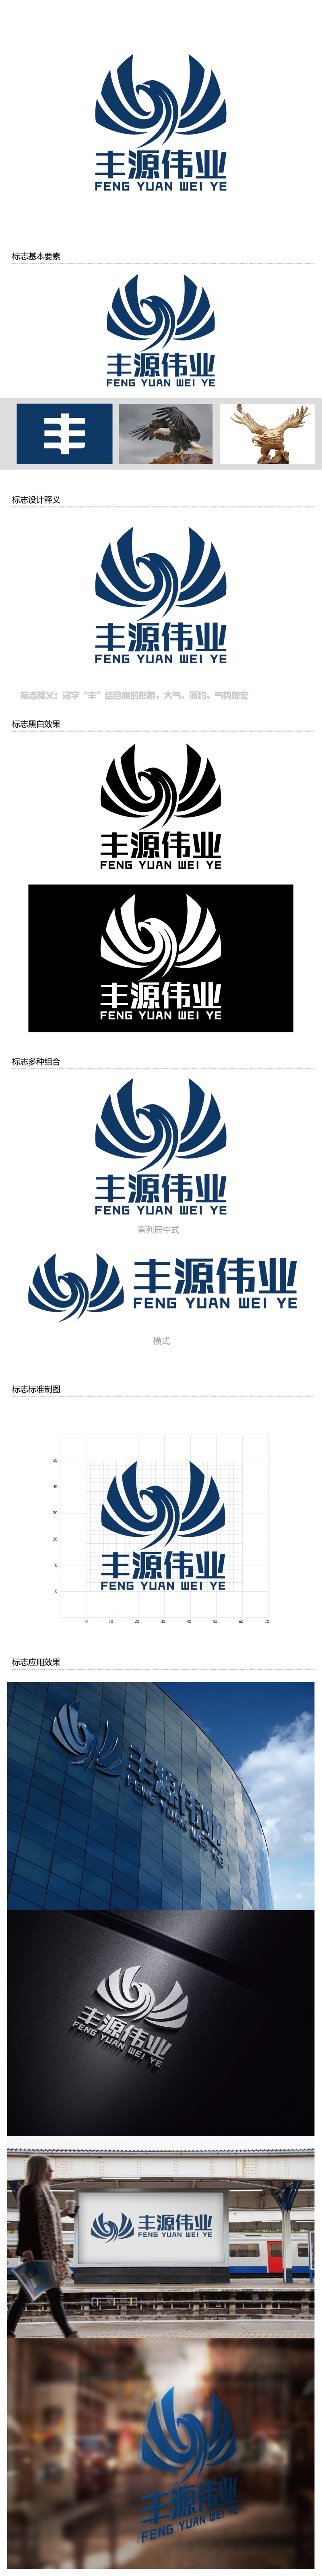 安冬的北京丰源伟业建筑装饰工程有限公司logo设计